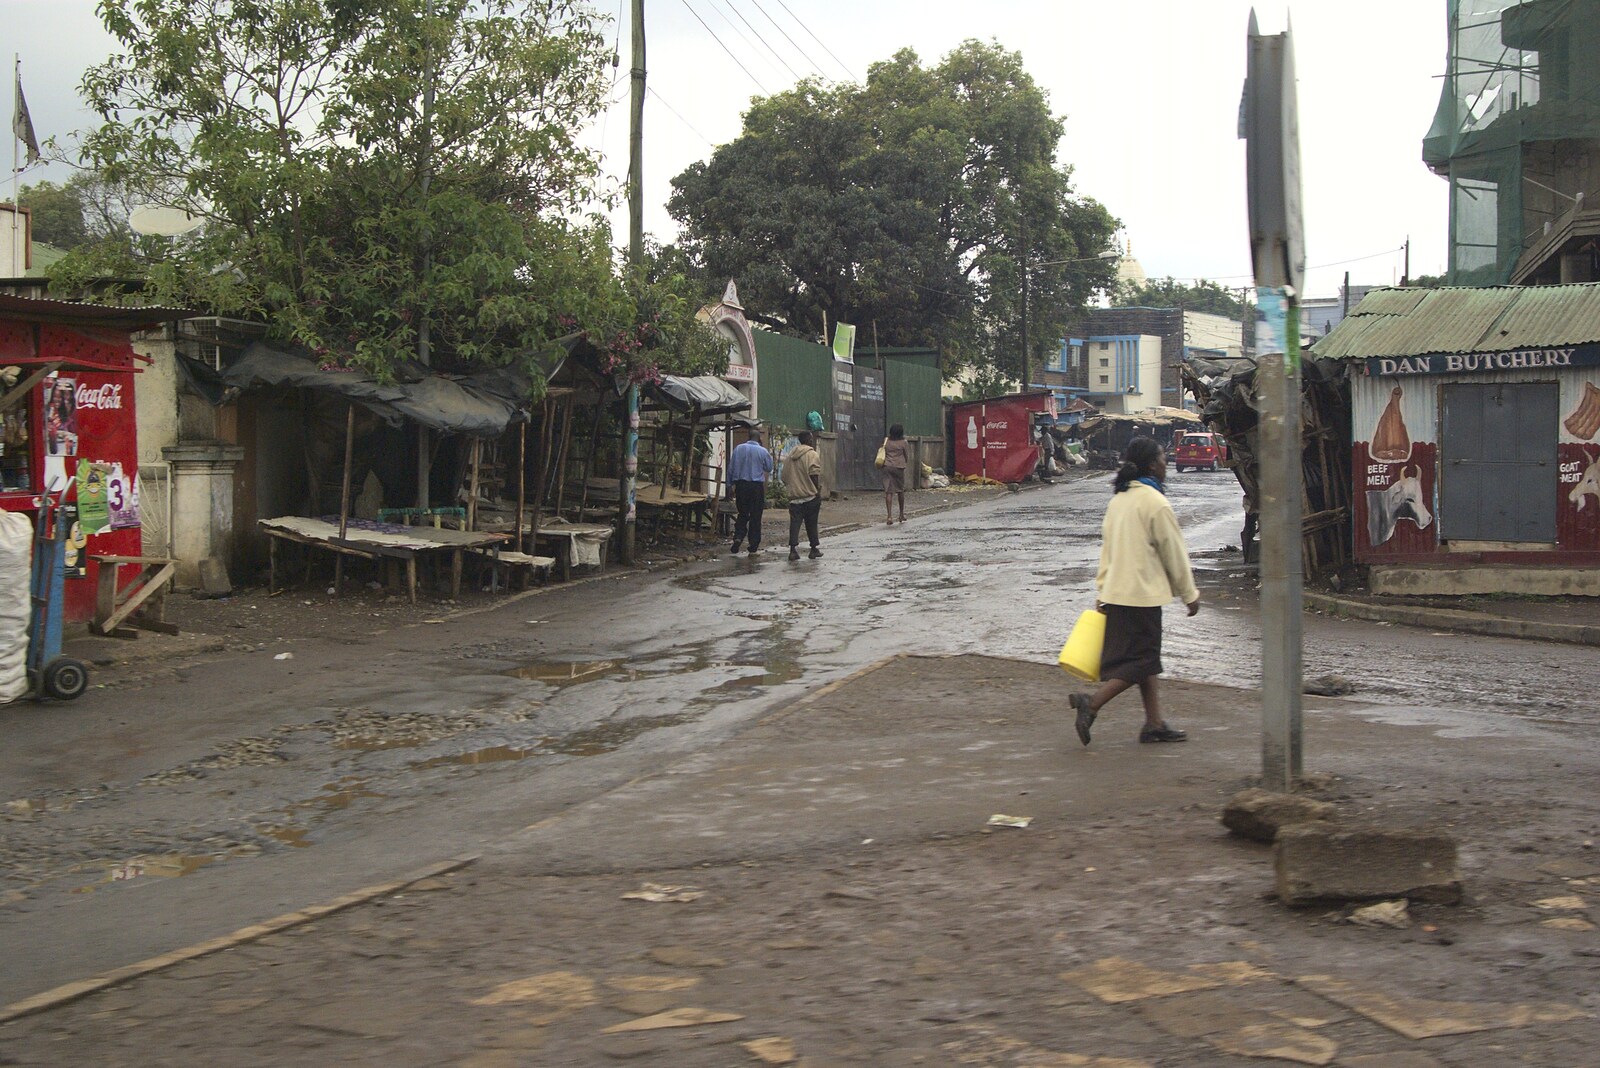 The streets of Nairobi from Nairobi and the Road to Maasai Mara, Kenya, Africa - 1st November 2010